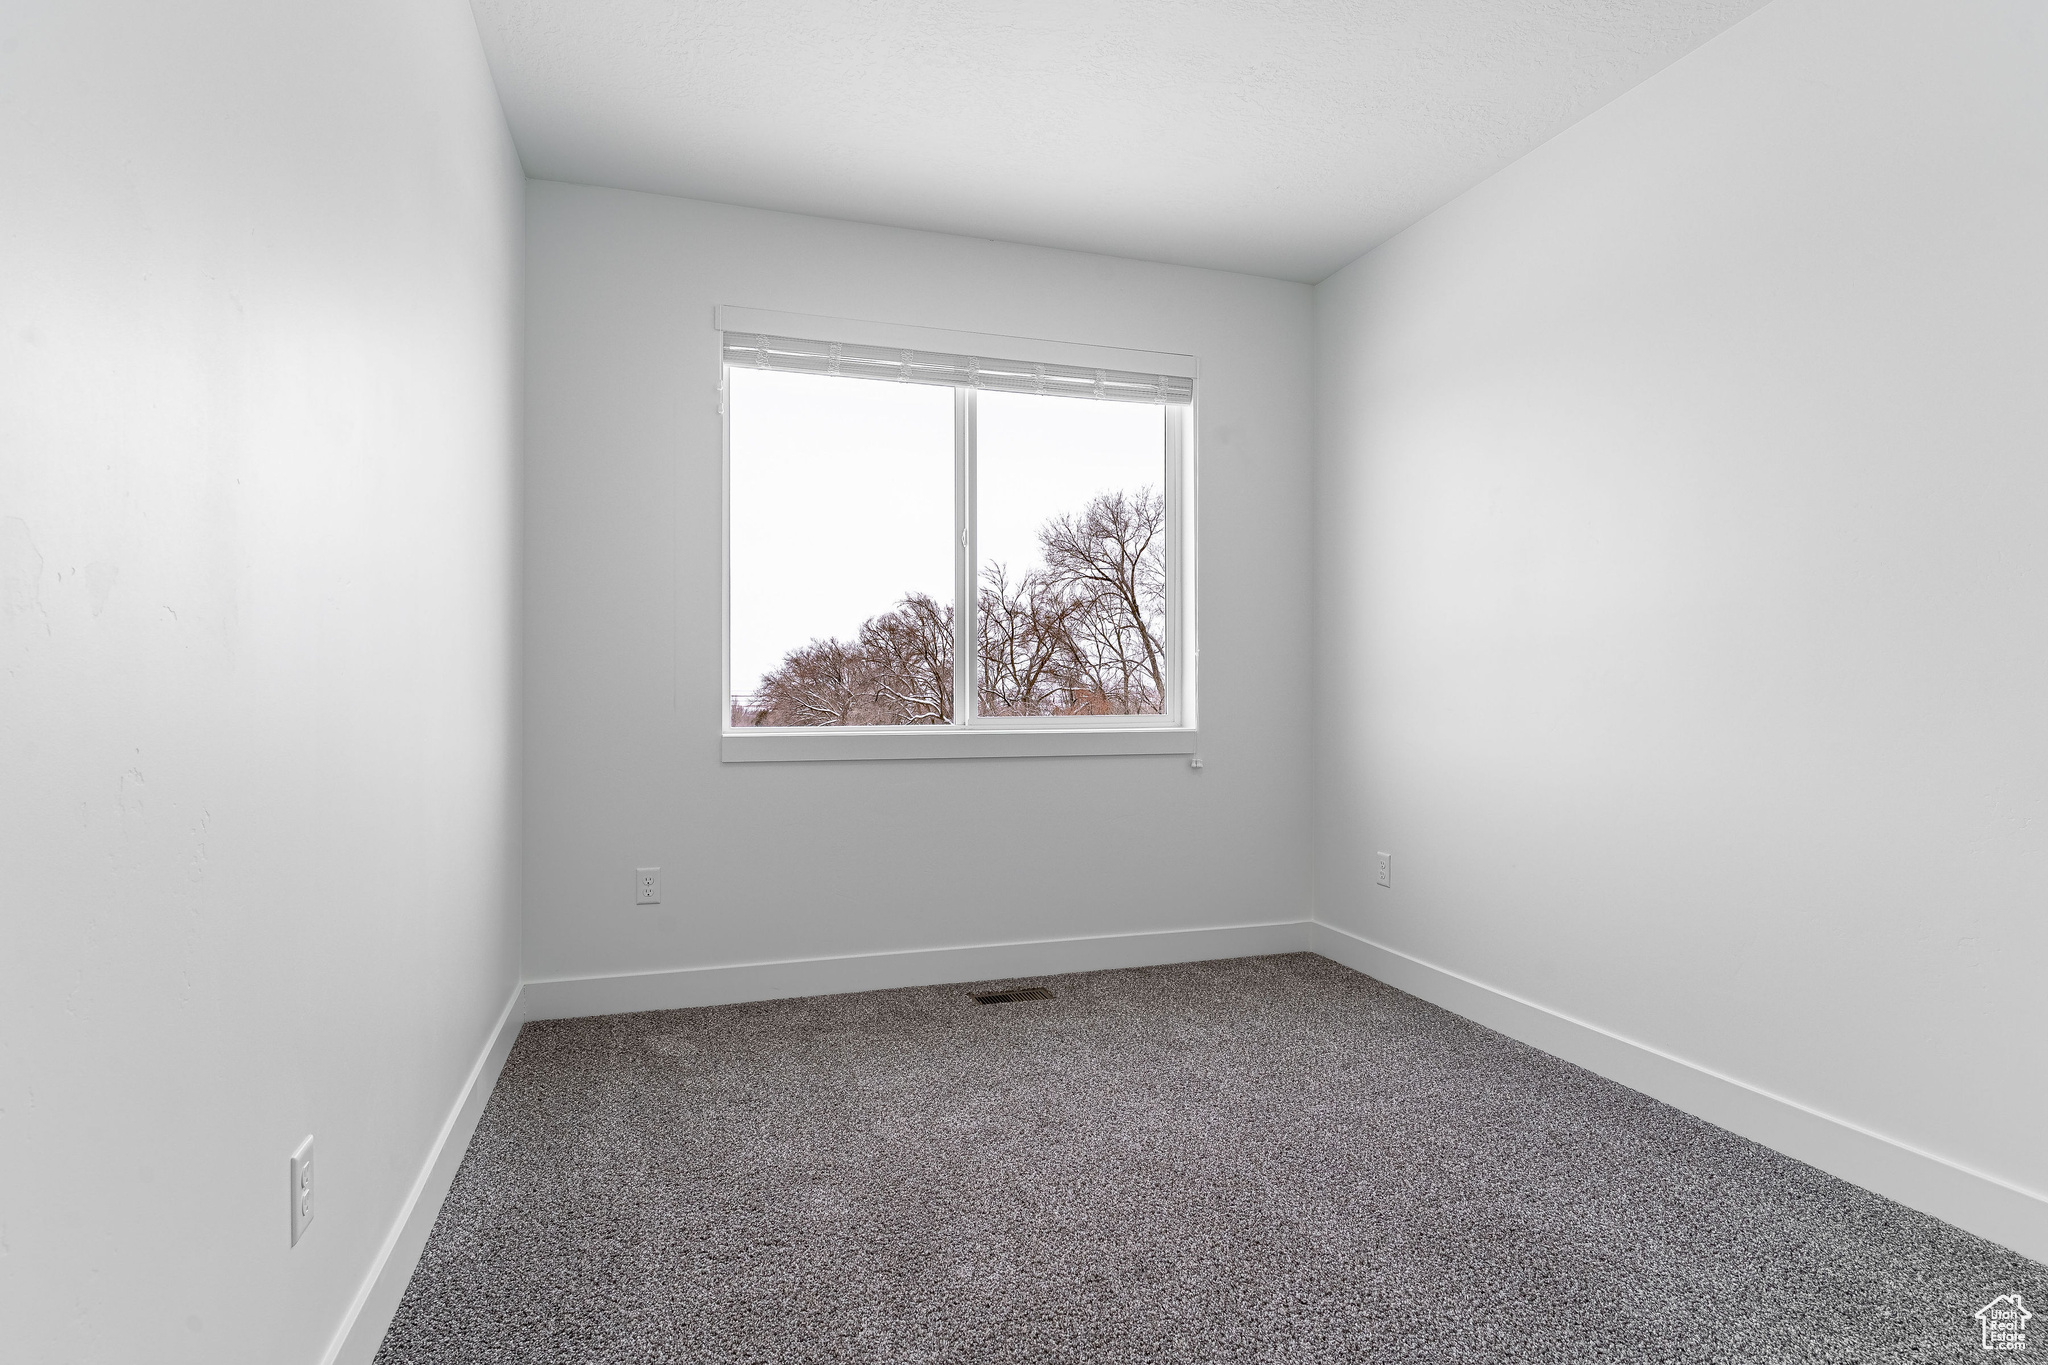 Empty room with dark carpet